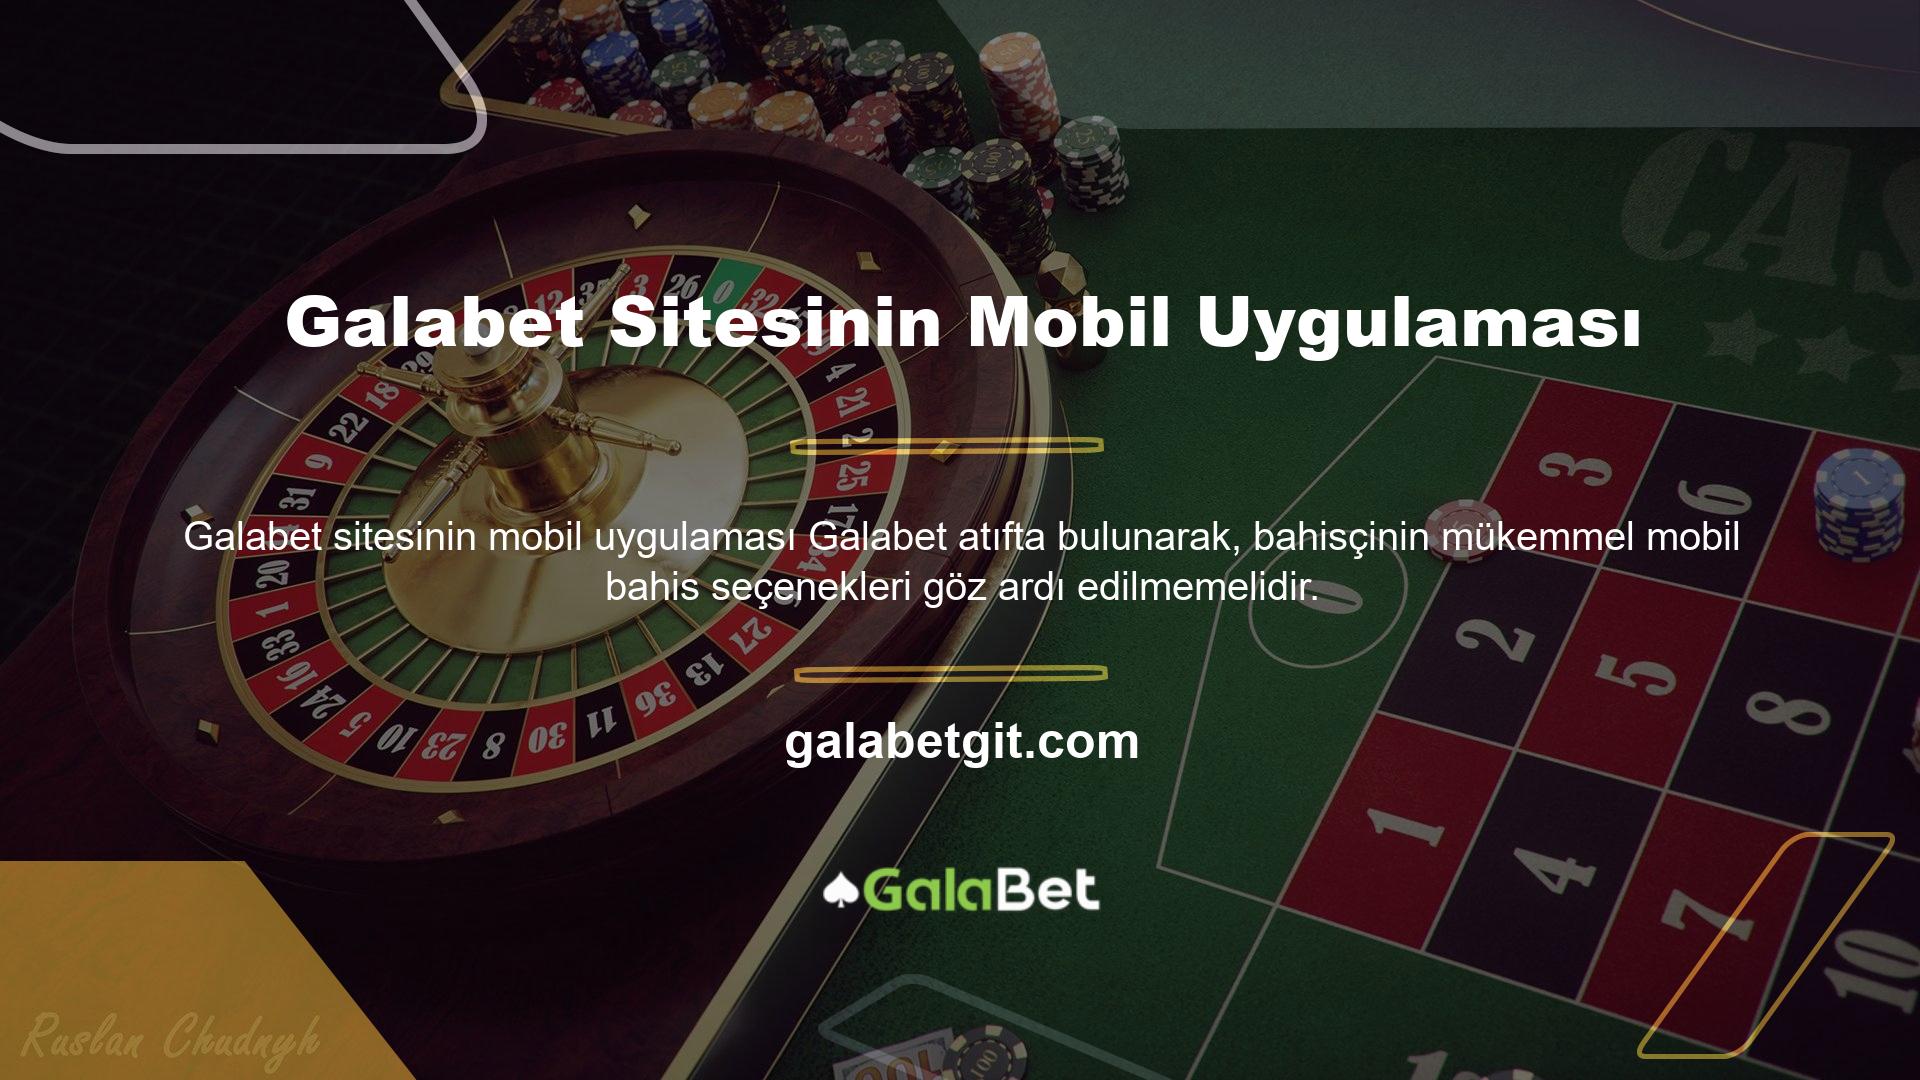 Galabet, en iyi çevrimiçi mobil bahisçilerden biridir